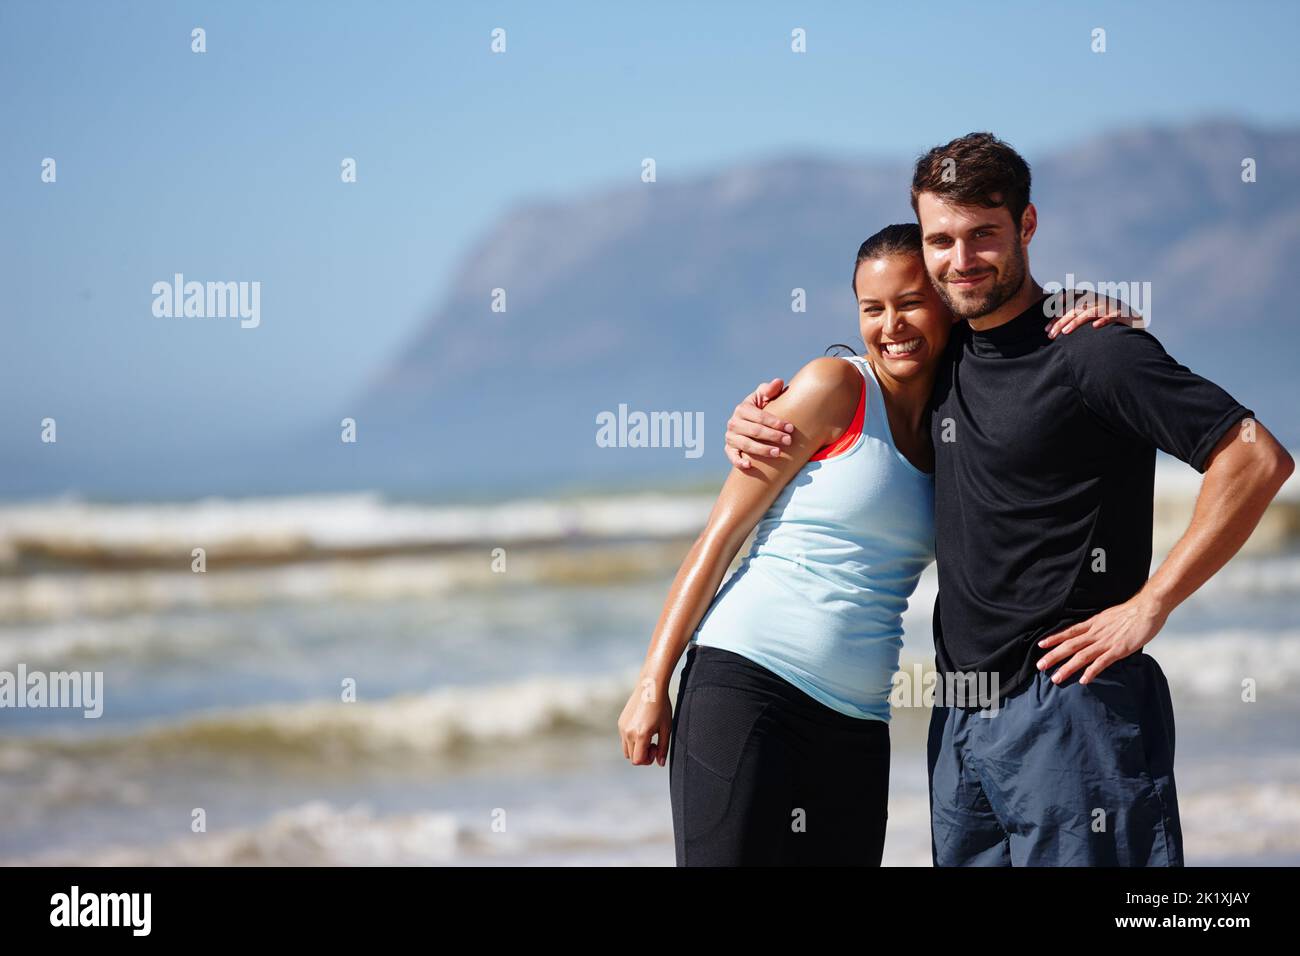 Nos encanta compartir nuestro entrenamiento de verano. Una pareja joven y cariñosa posando en equipo deportivo en la playa. Foto de stock